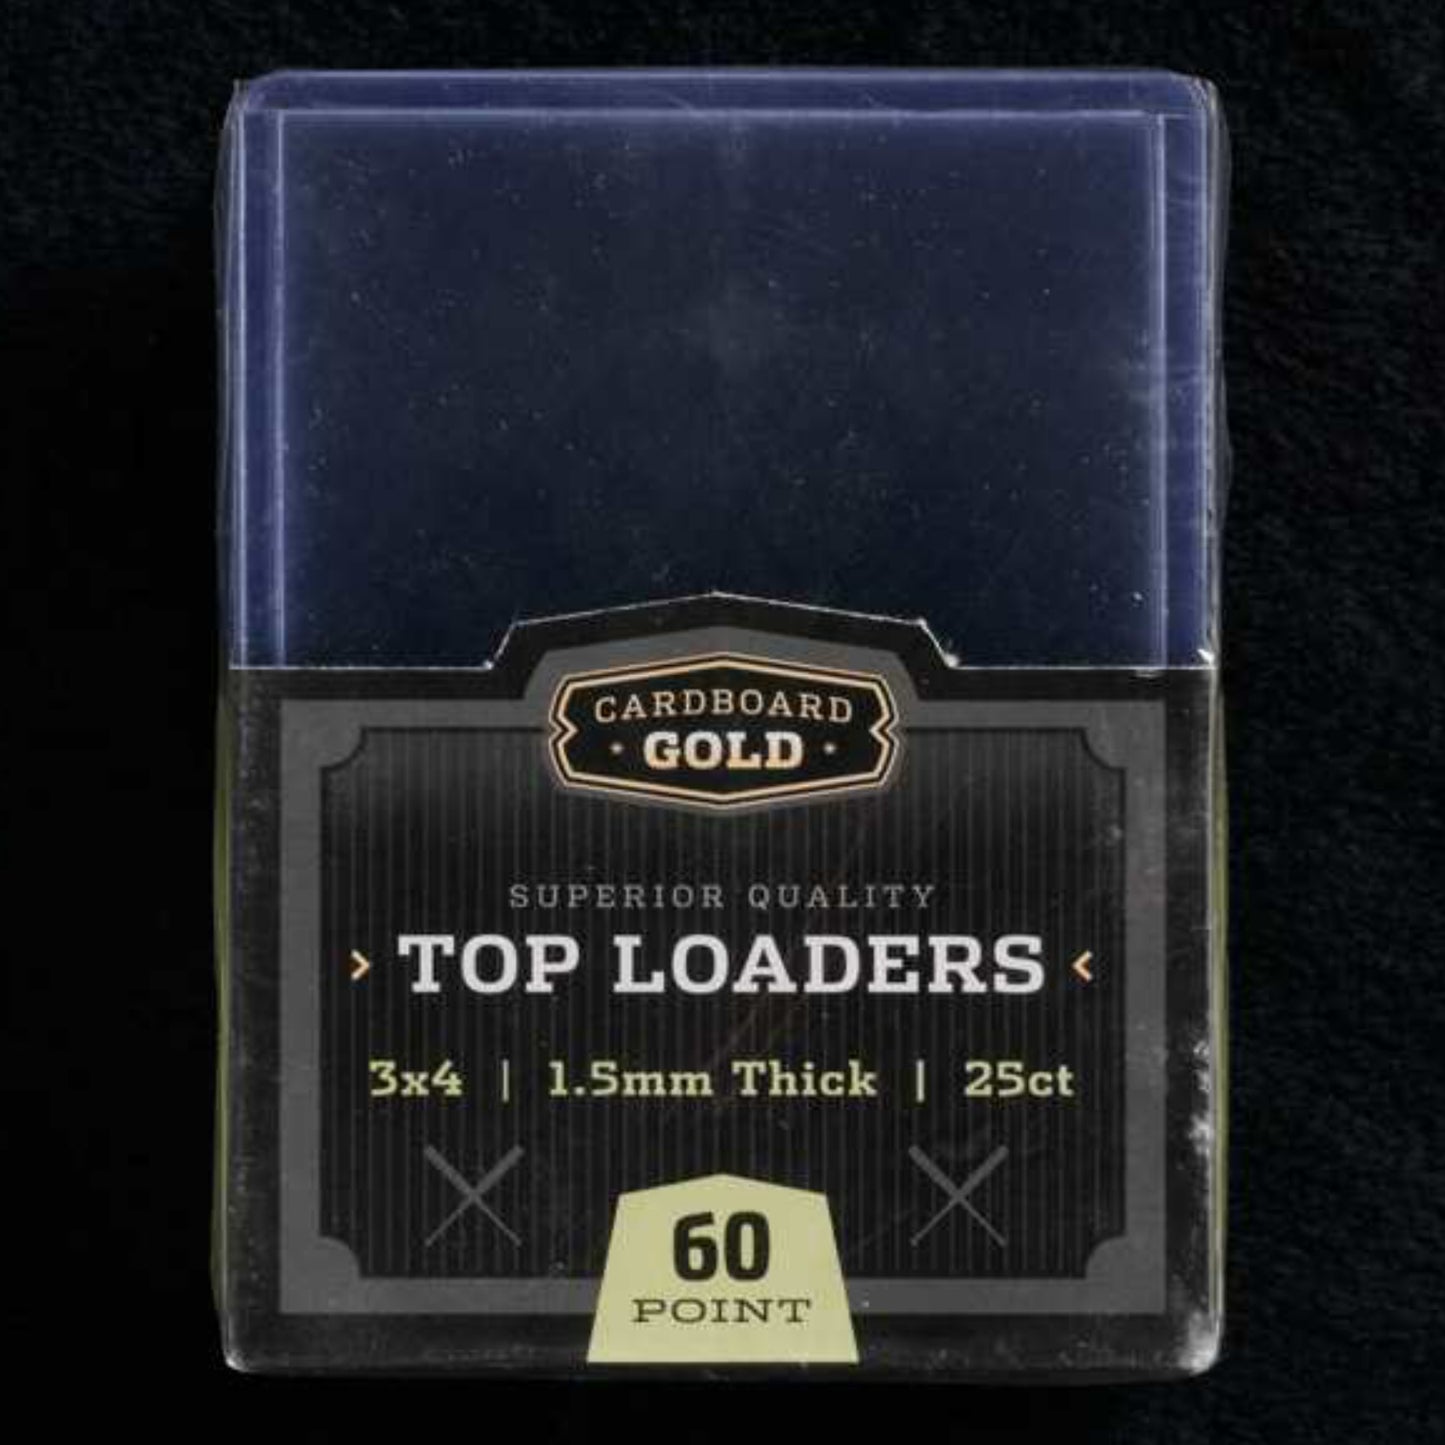 Cardboard Gold 3 x 4 Top Loader Toploader - 60 Point/Pt